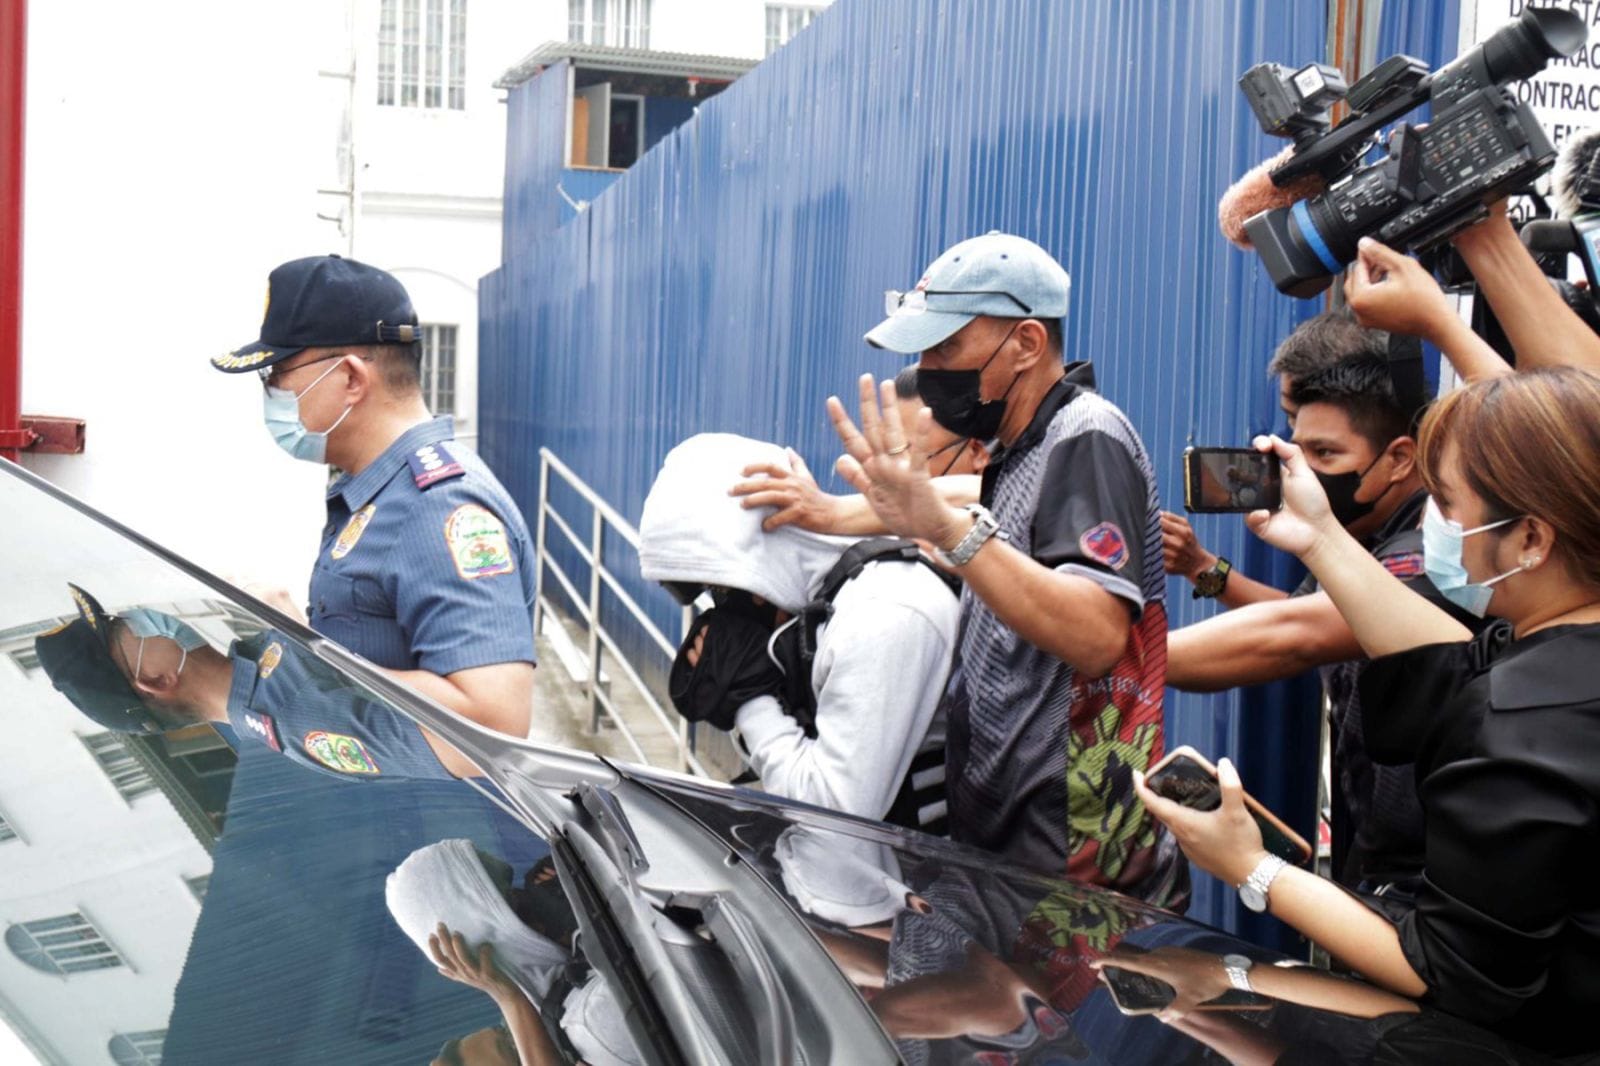 Joel Escorial escorted by police